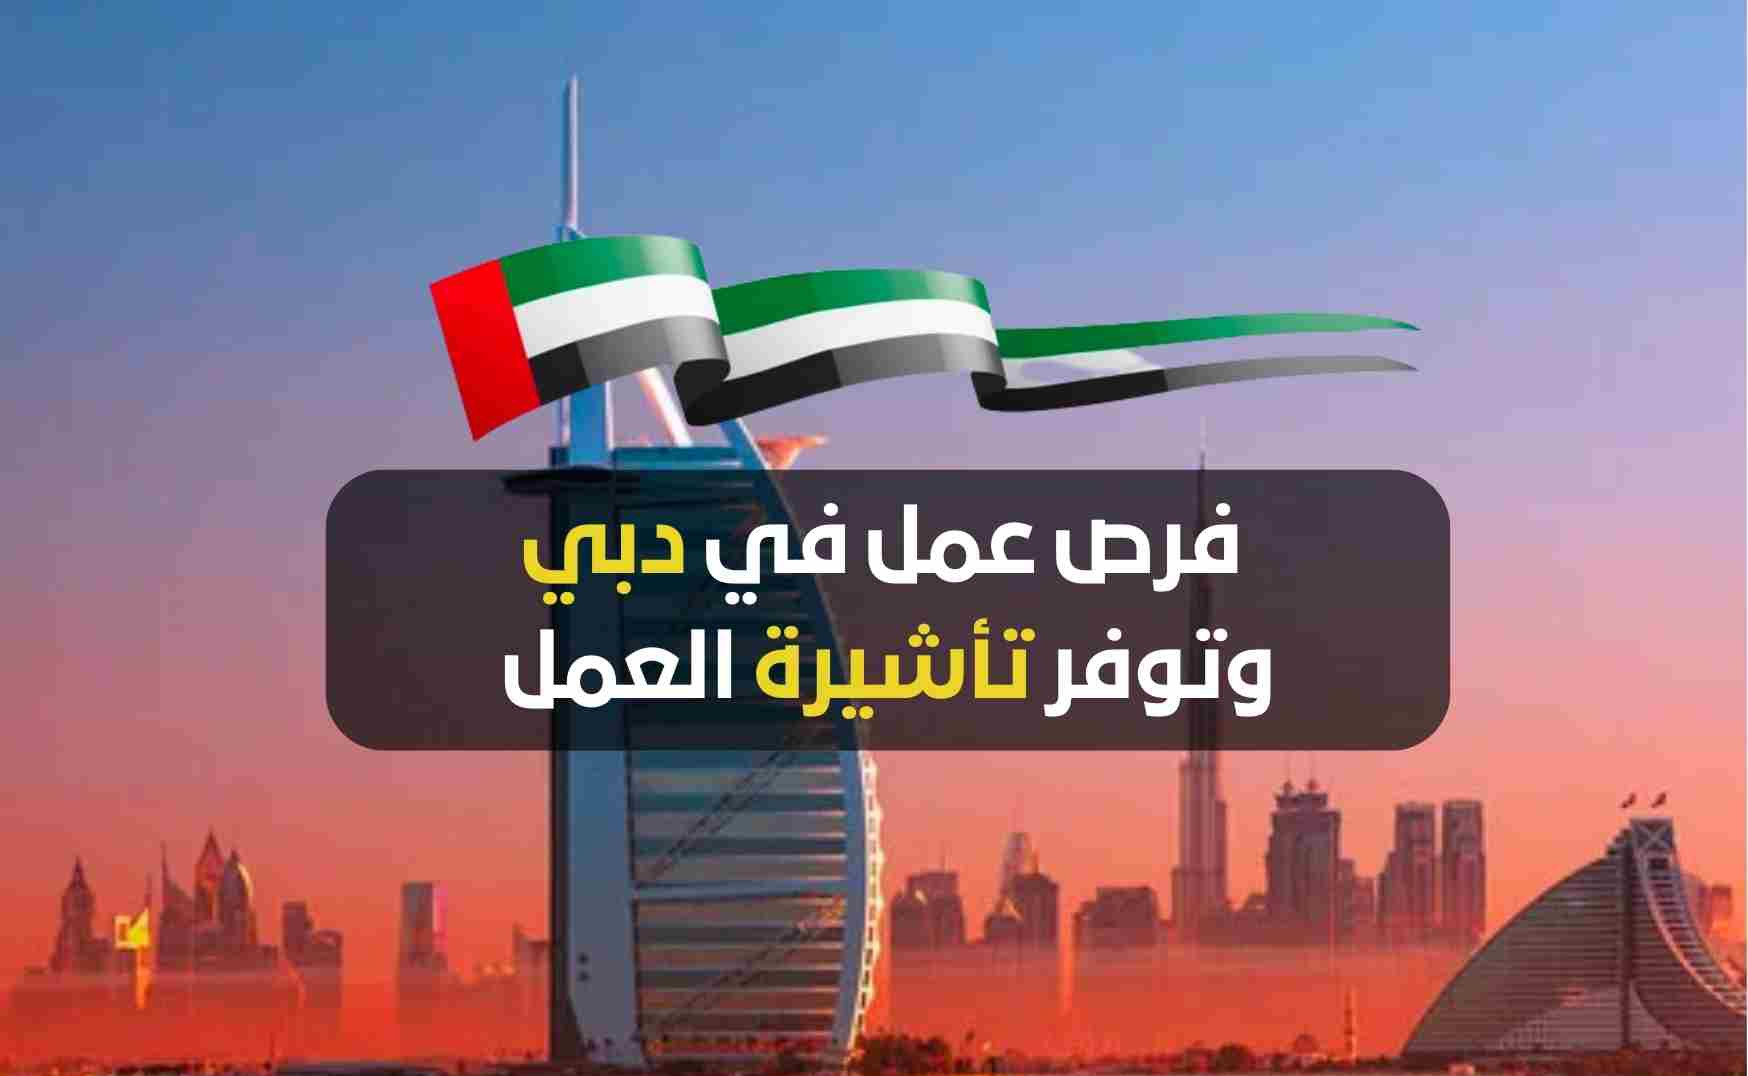 بتأشيرة عمل وإقامة مجانية .. سارع بالتقديم لأقوى وظائف الإمارات بمختلف التخصصات وبرواتب عالية 